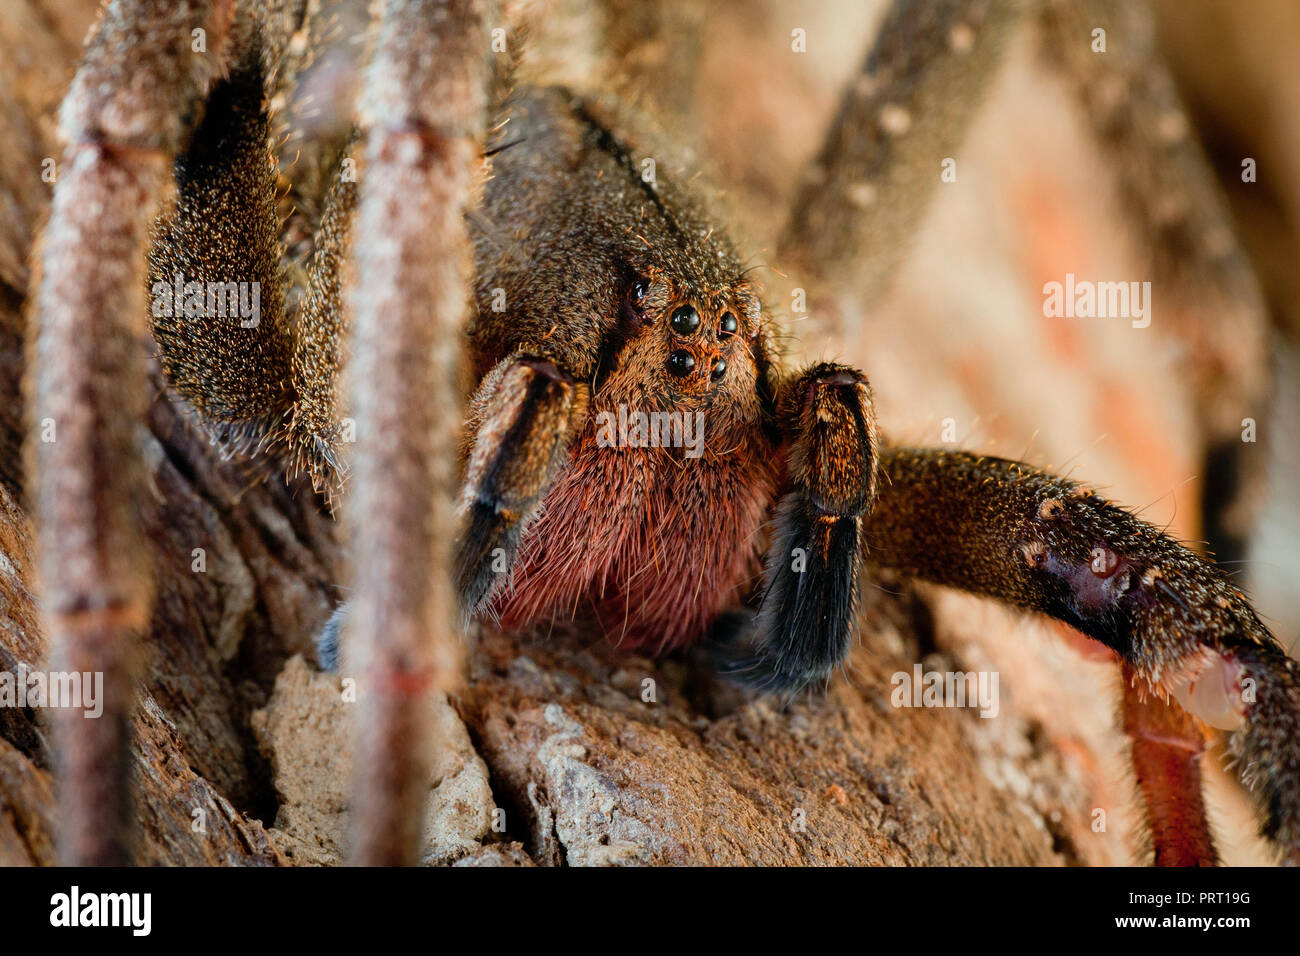 L'errance du Brésil (araignée Phoneutria aranha, armadeira) font face à l'araignée macro montrant les yeux, portrait détaillé. Araignée venimeuse du Brésil. Banque D'Images